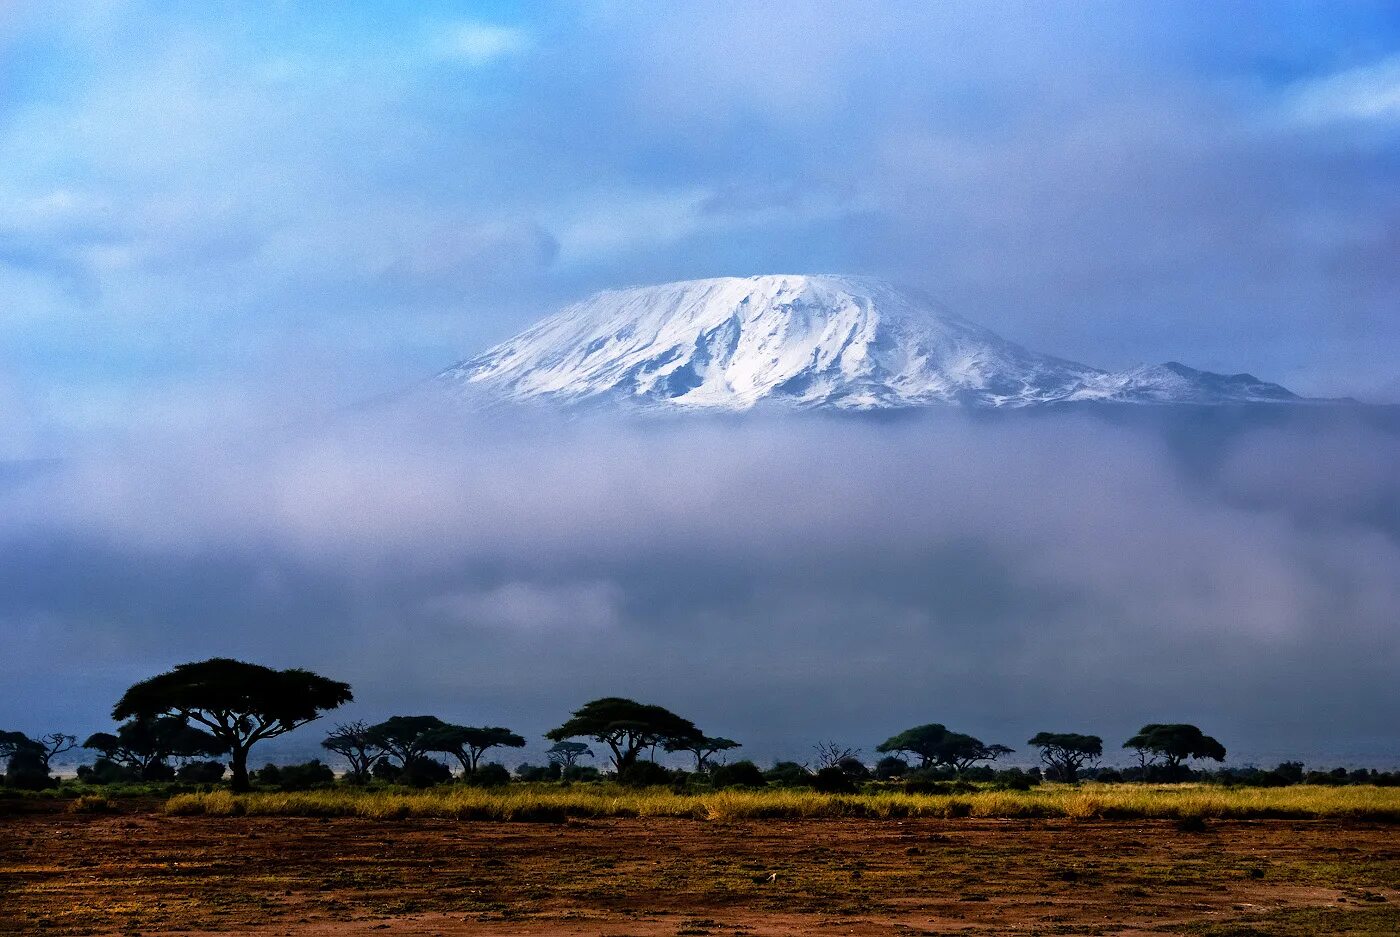 Килиманджаро хемингуэя. Гора в Кении Килиманджаро. Национальный парк Килиманджаро в Африке. Национальный парк Килиманджаро в Танзании. Национальный парк горы Килиманджаро в Танзании.